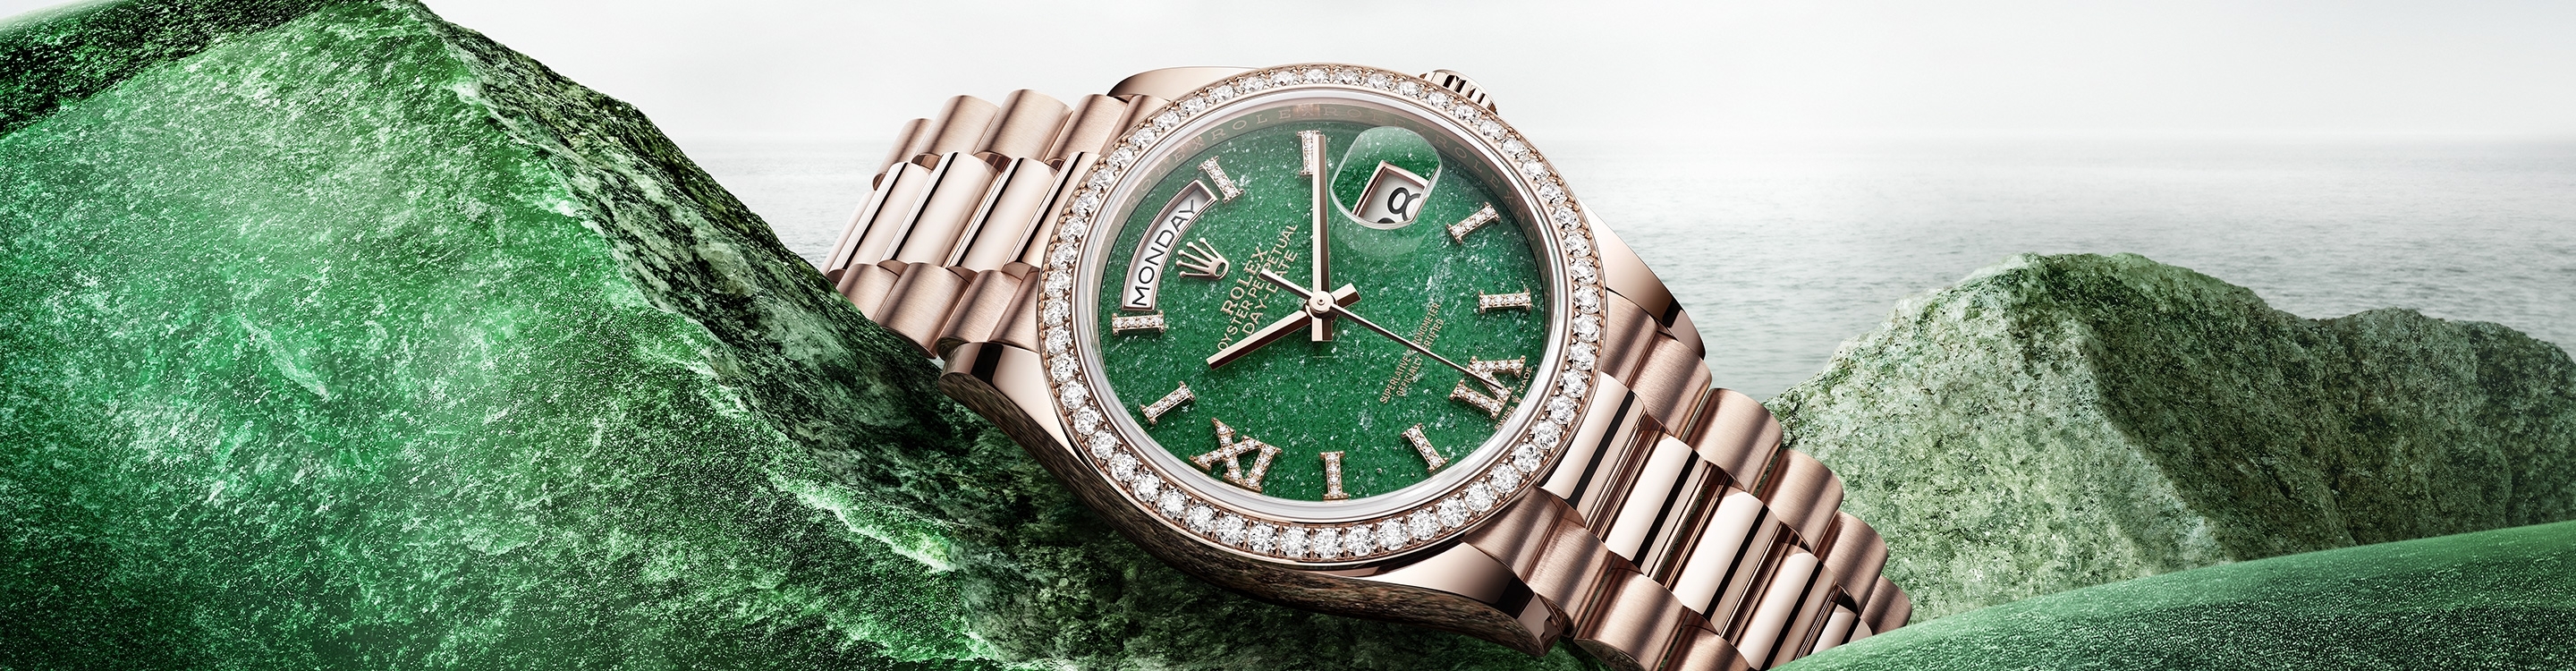 Rolex Day-Date腕錶金款，M228239-0007 | 歐洲坊